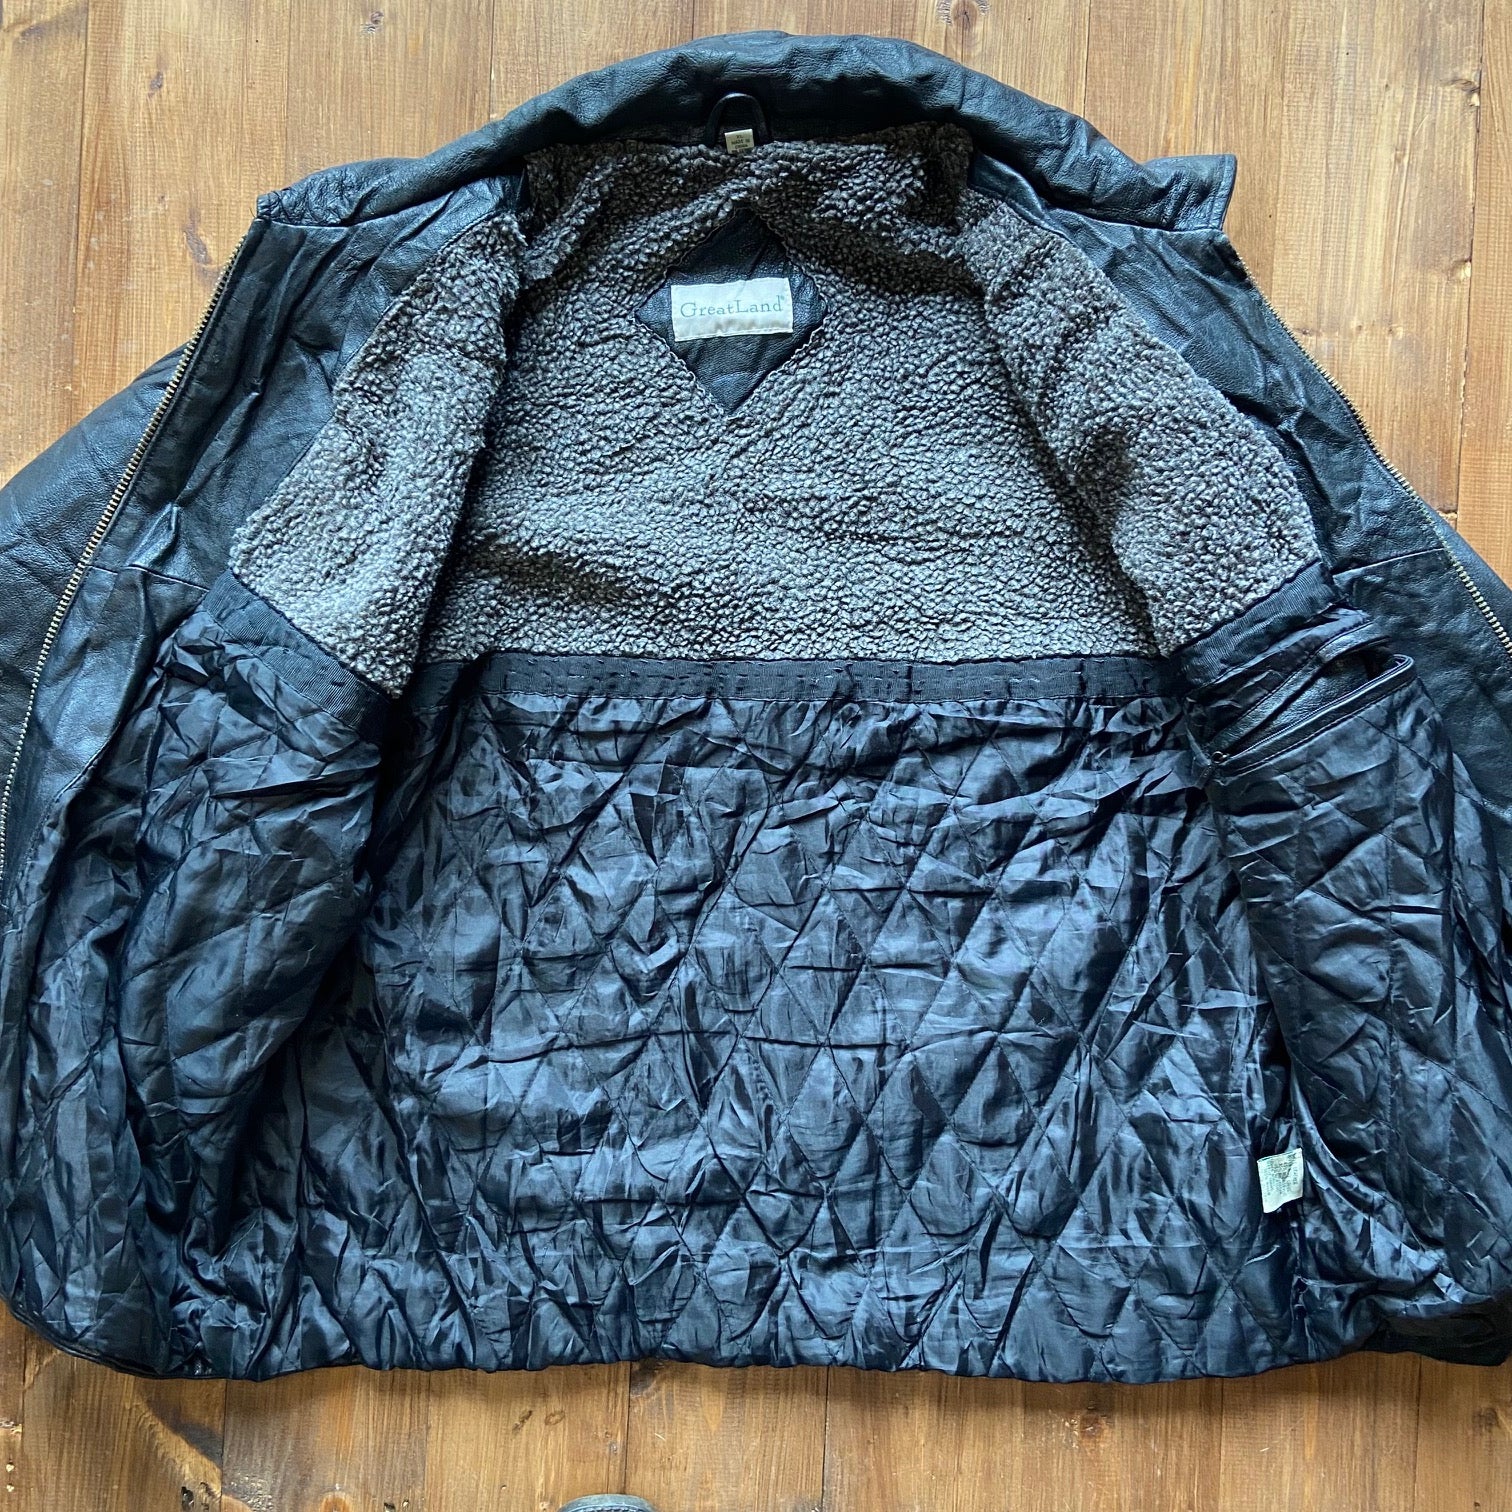 Long waist leather vintage gangster coat/jacket